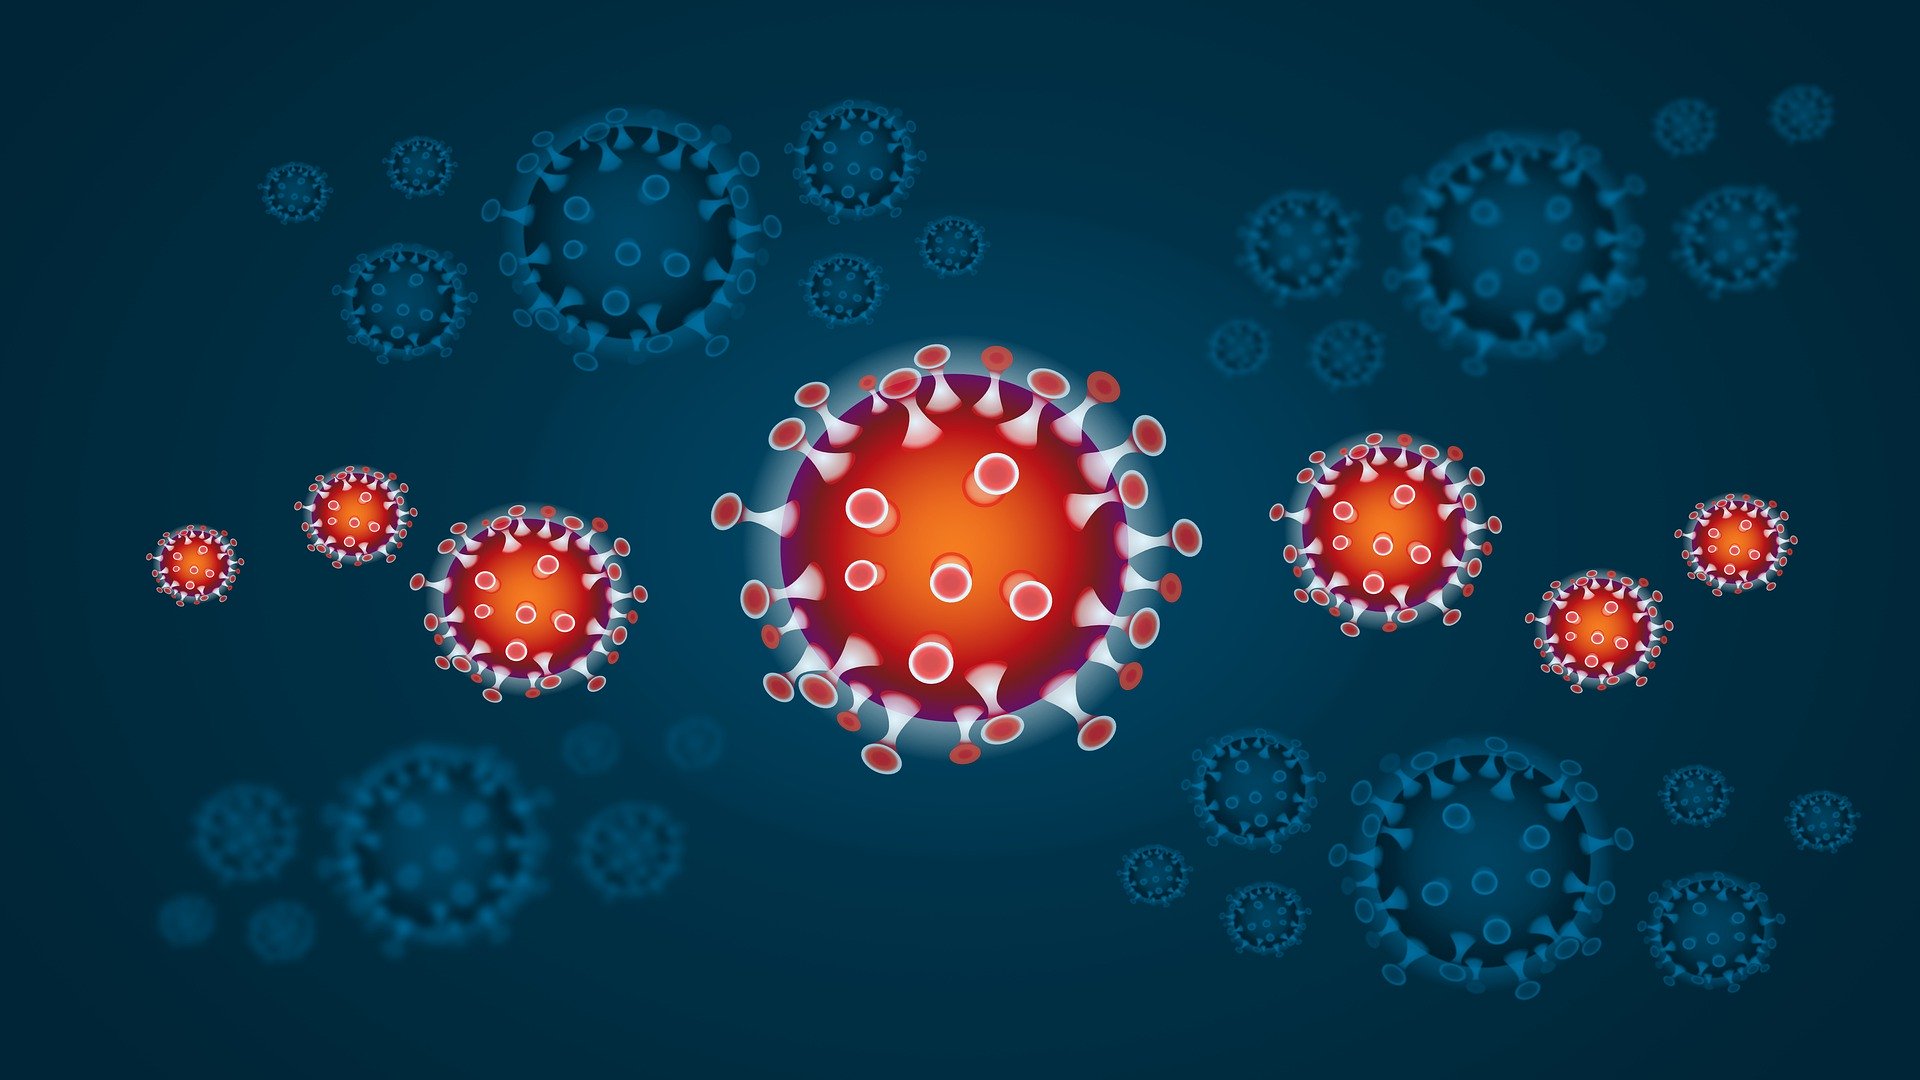 Coronaviren vor blauem Hintergrund